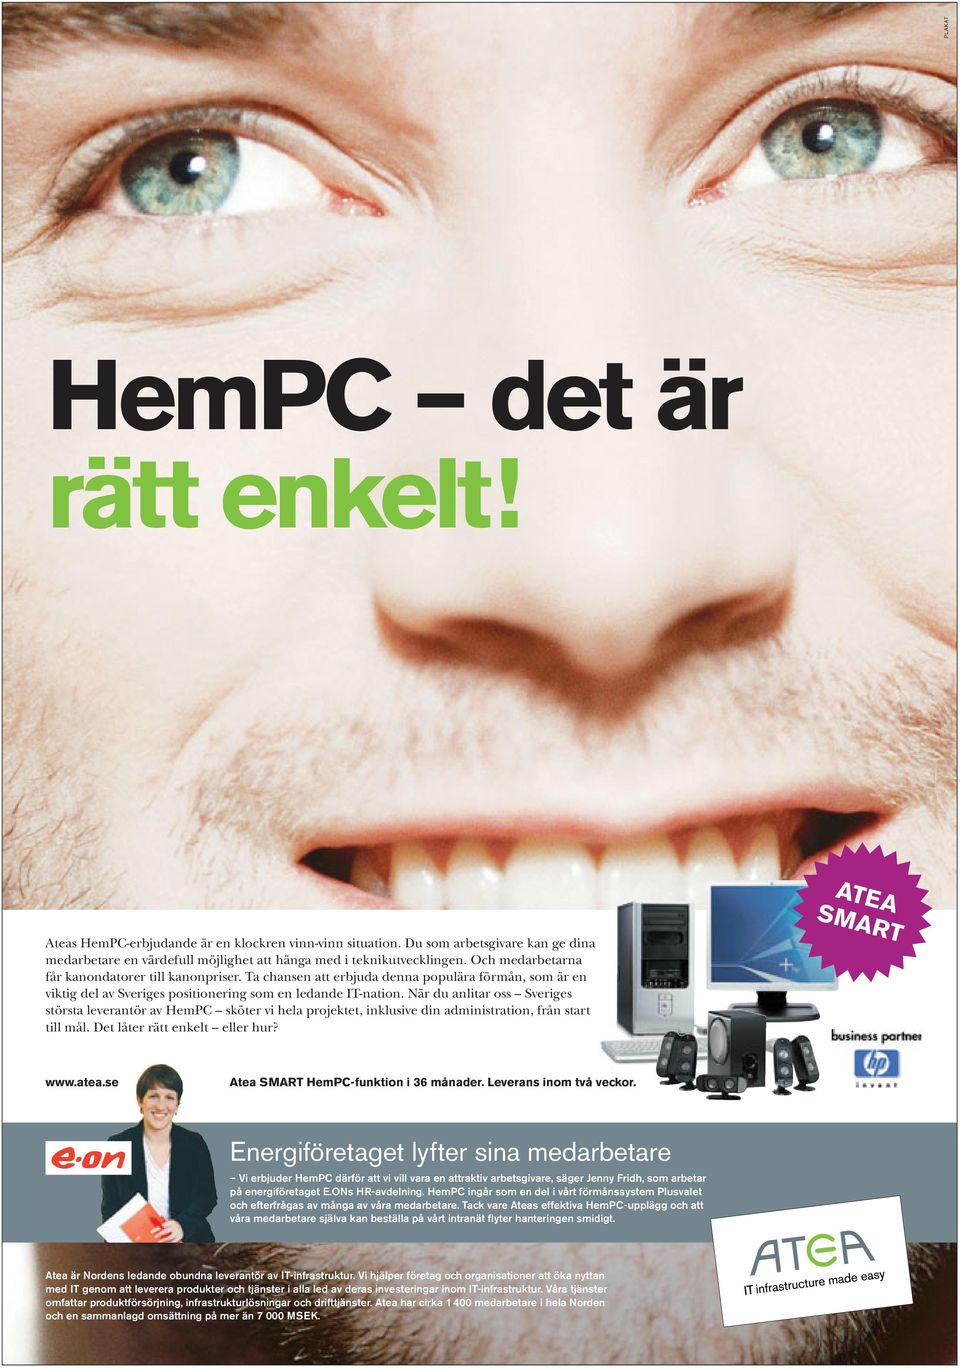 När du anlitar oss Sveriges största leverantör av HemPC sköter vi hela projektet, inklusive din administration, från start till mål. Det låter rätt enkelt eller hur? ATEA SMART www.atea.